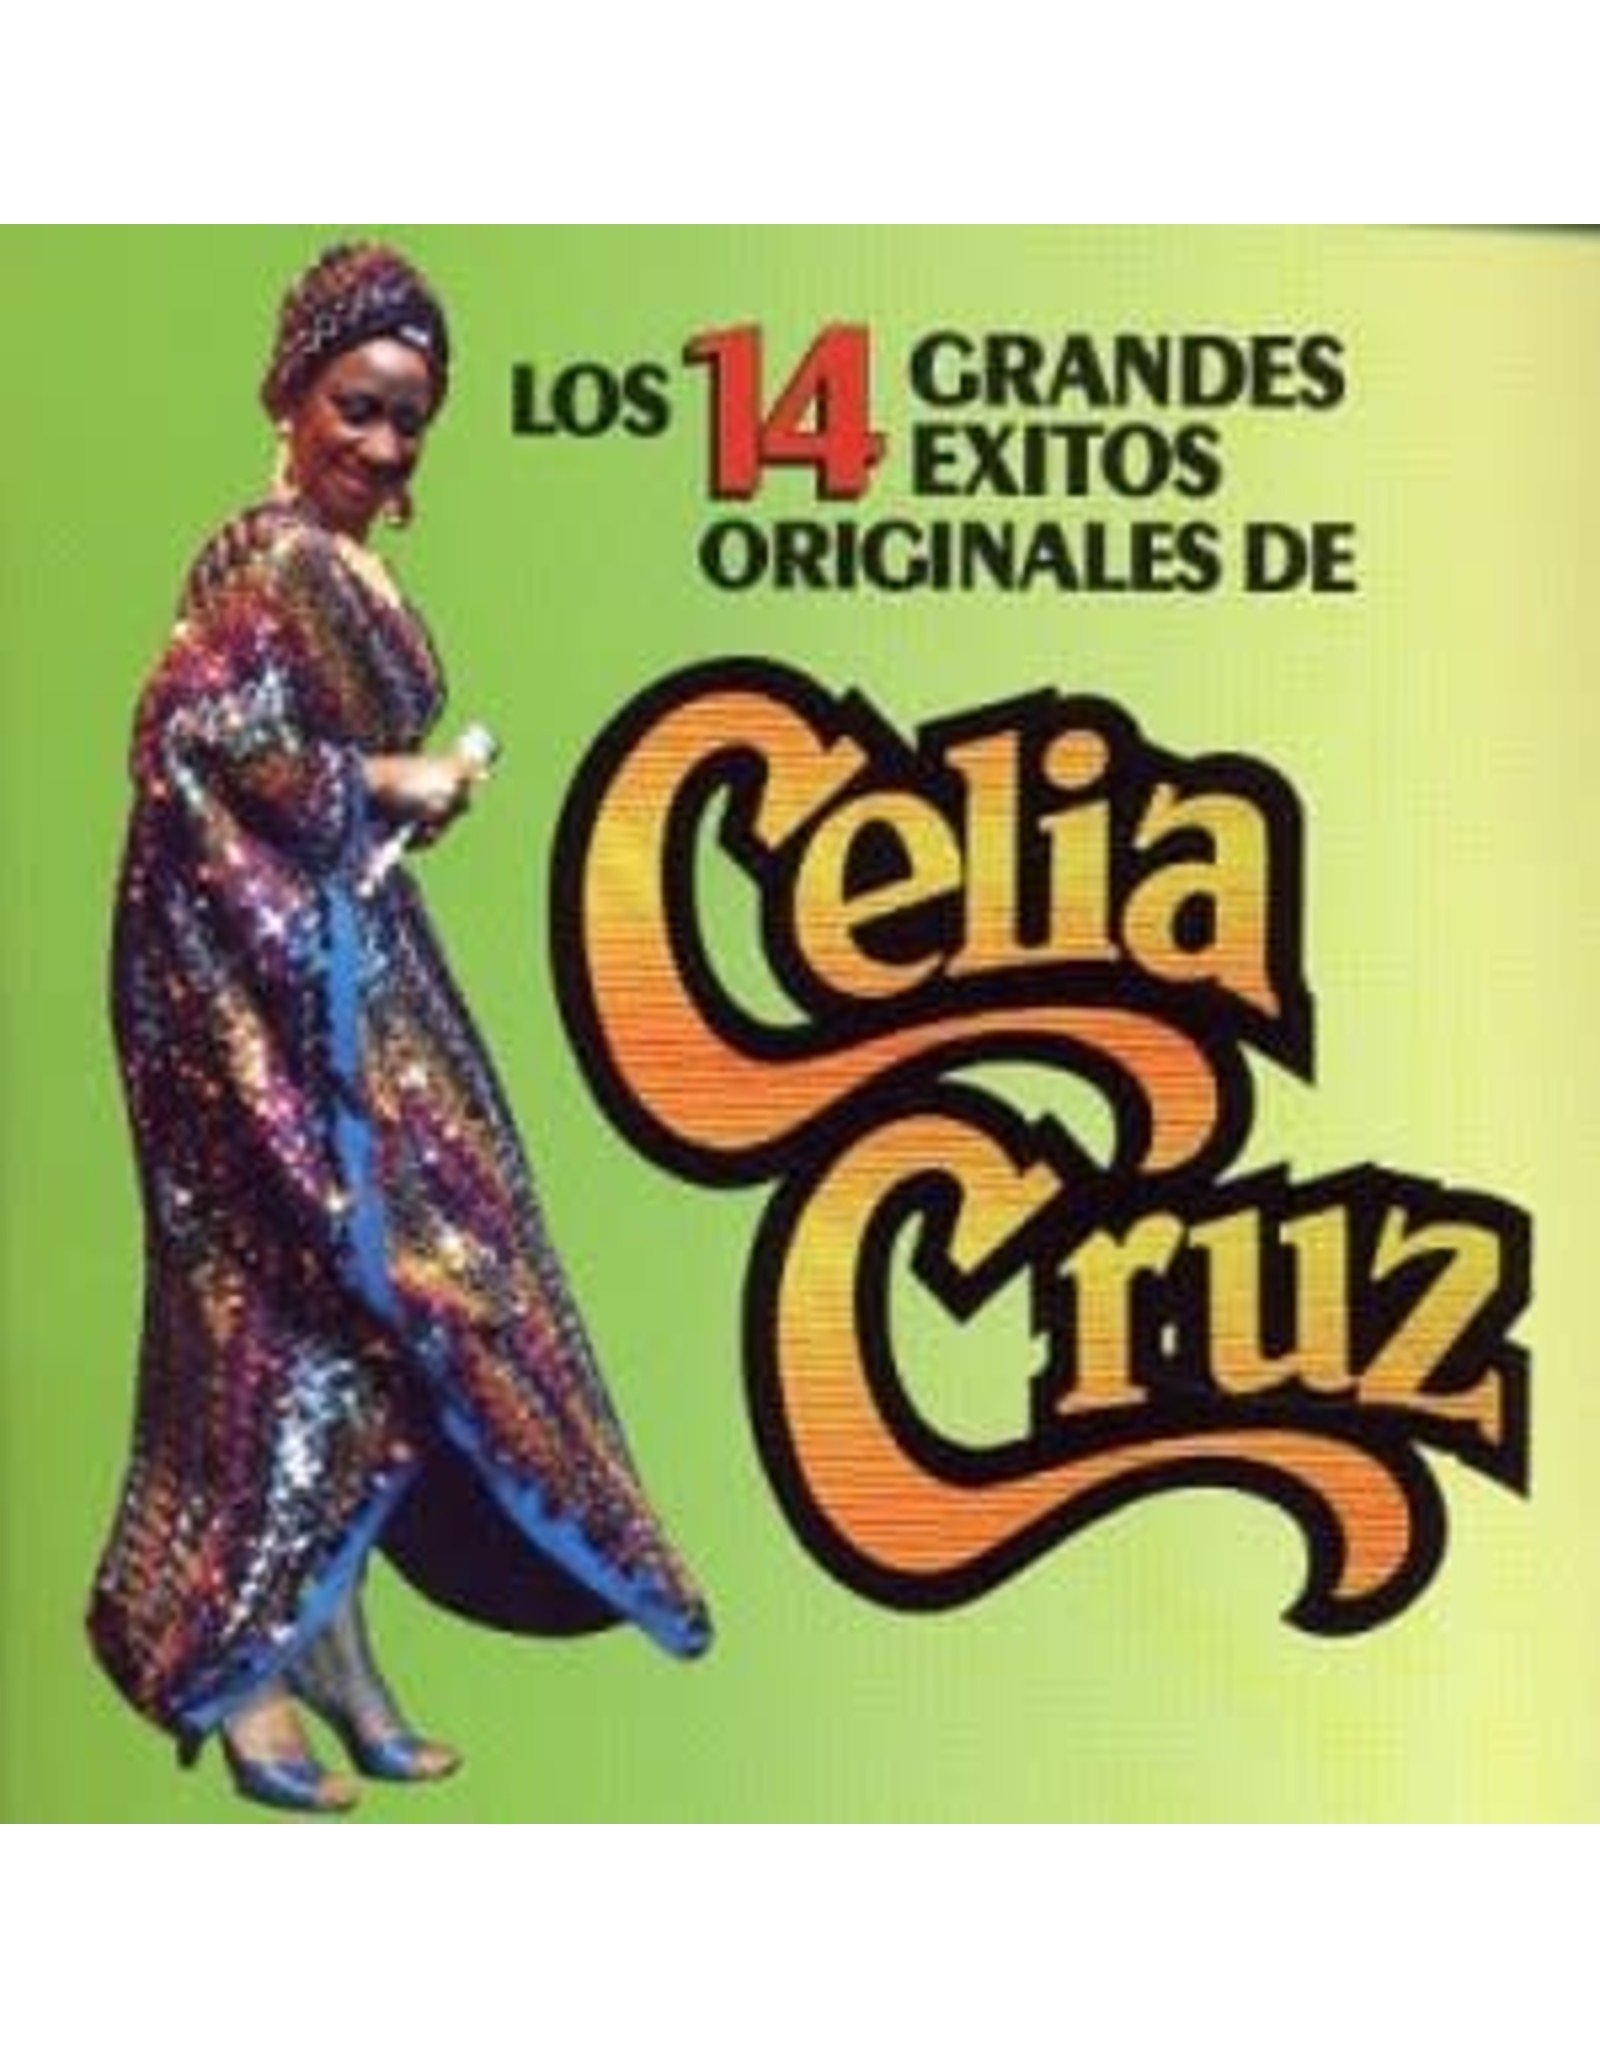 New Vinyl Celia Cruz - Los 14 Grandes Exitos Originales De Celia Cruz [1984 Cut-Out] LP